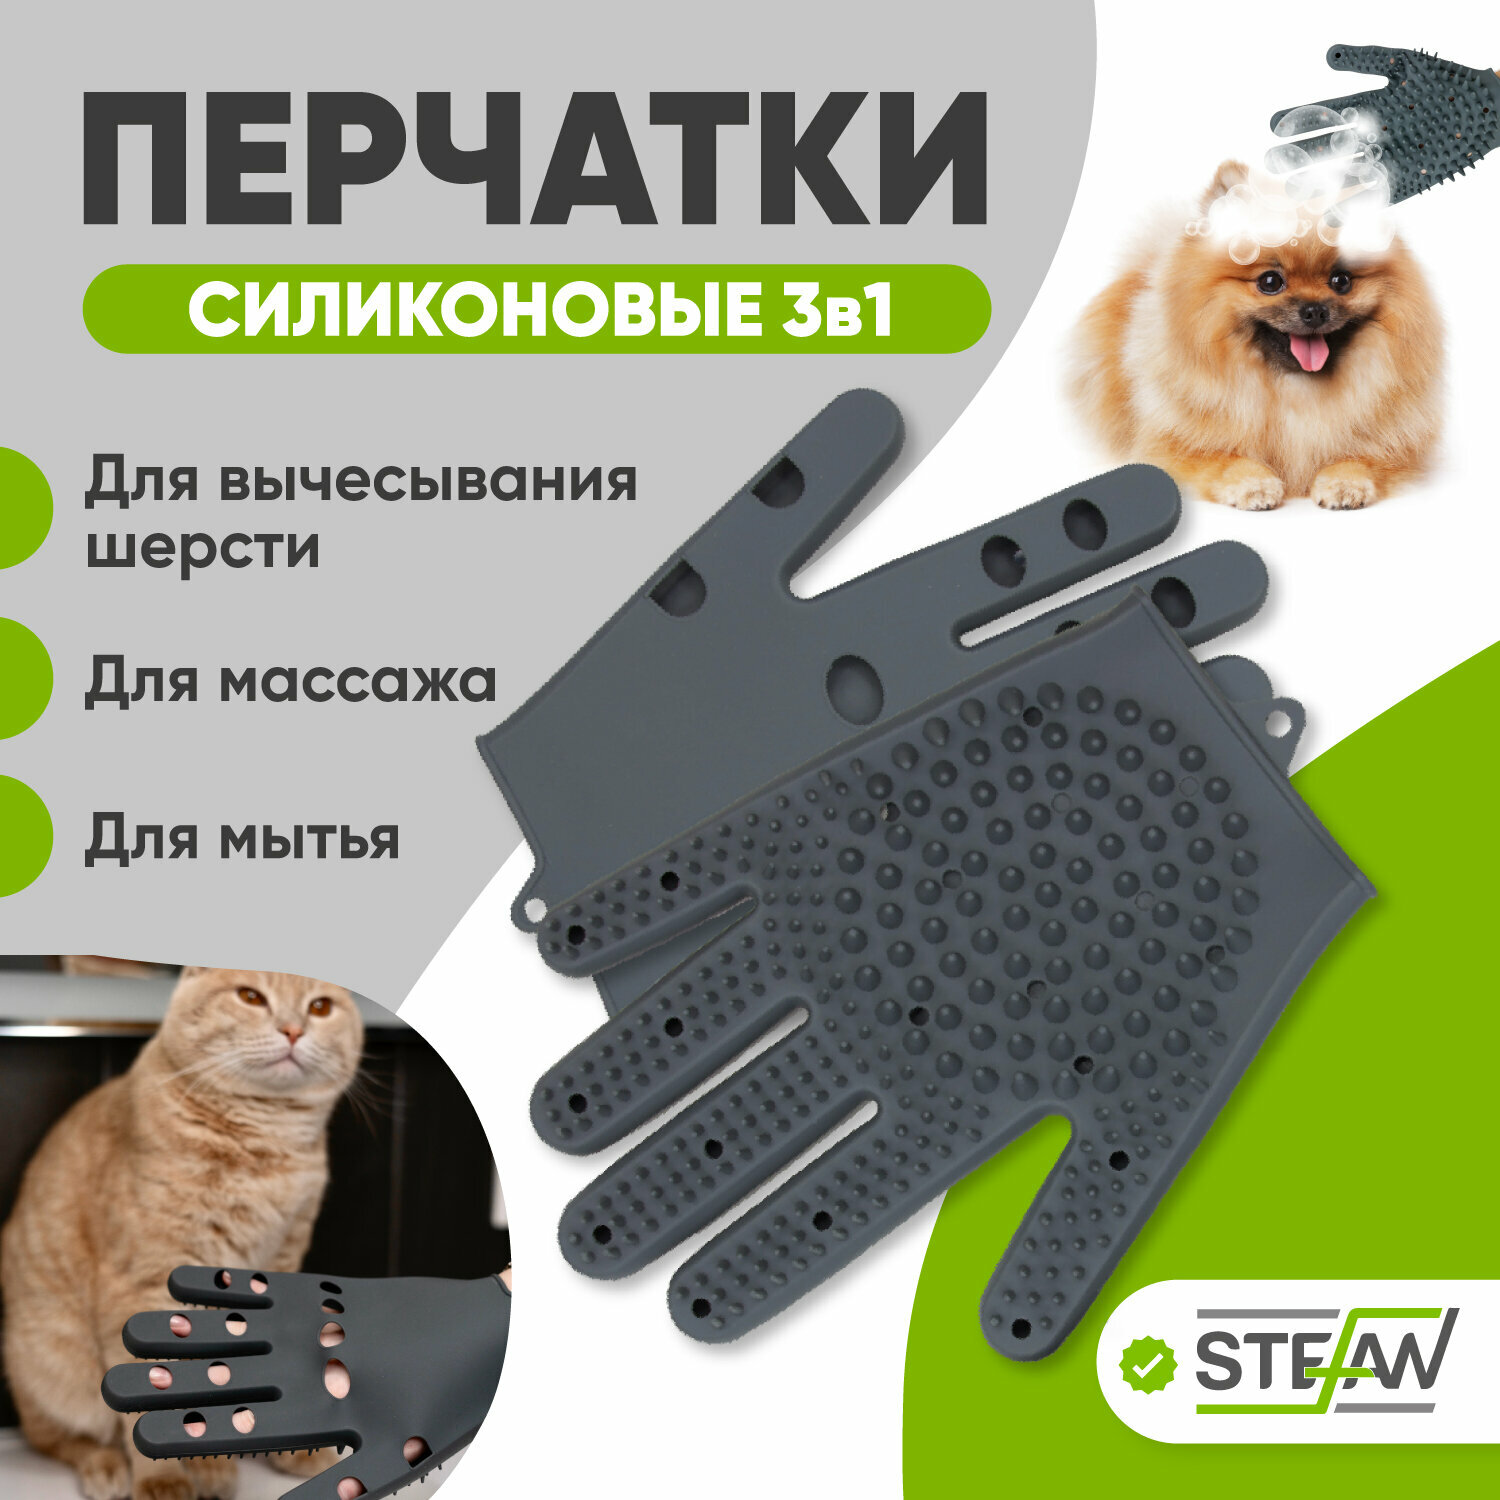 Перчатки силиконовые для мытья домашних животных STEFAN (Штефан), серый, WF51201